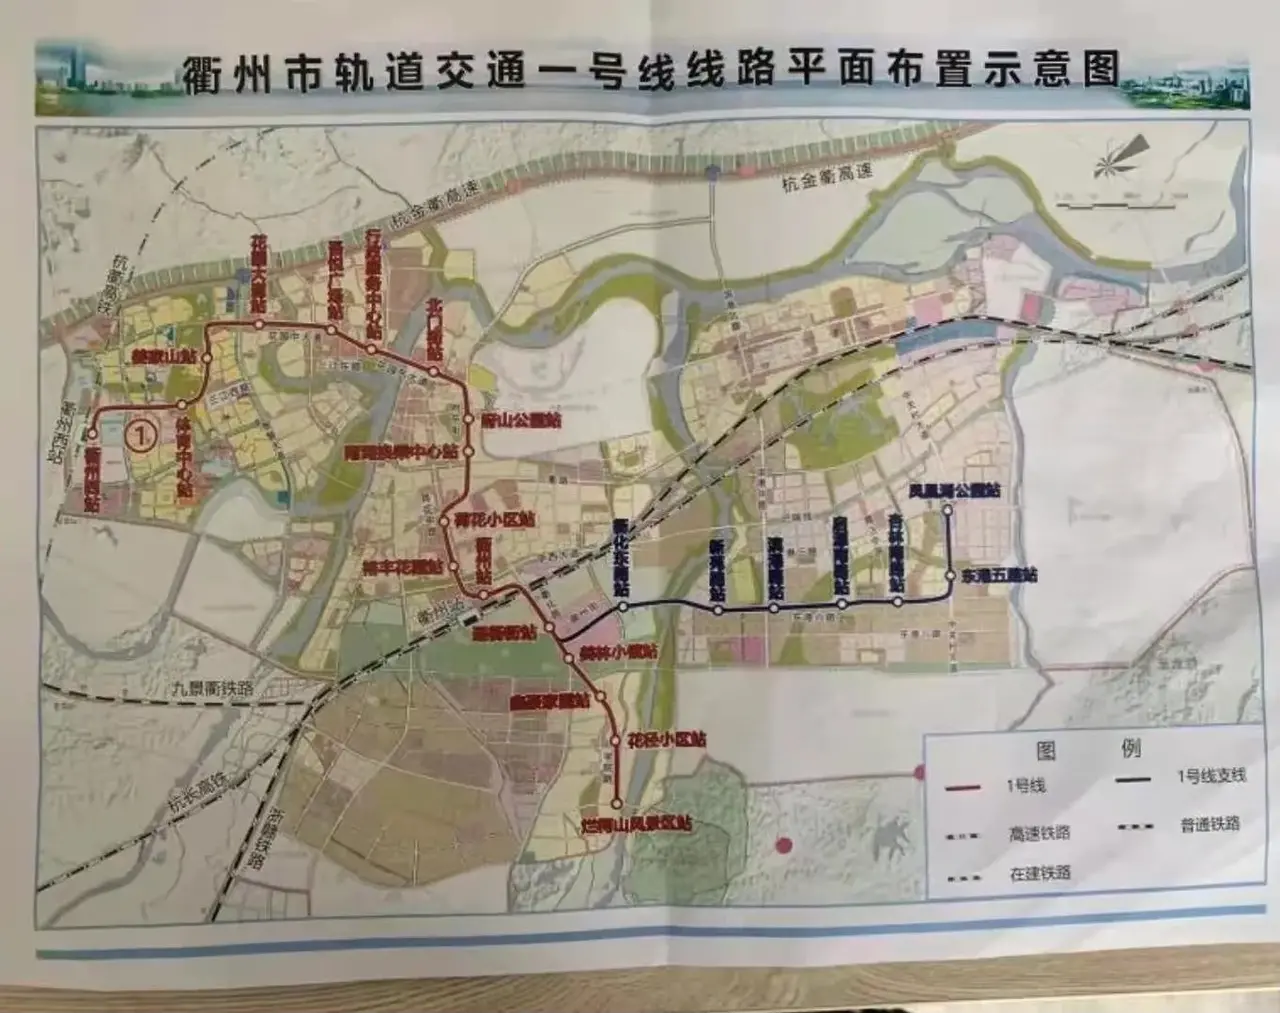 这张在网上流传的衢州市轨道交通一号线线路平面布置示意图是否属实?